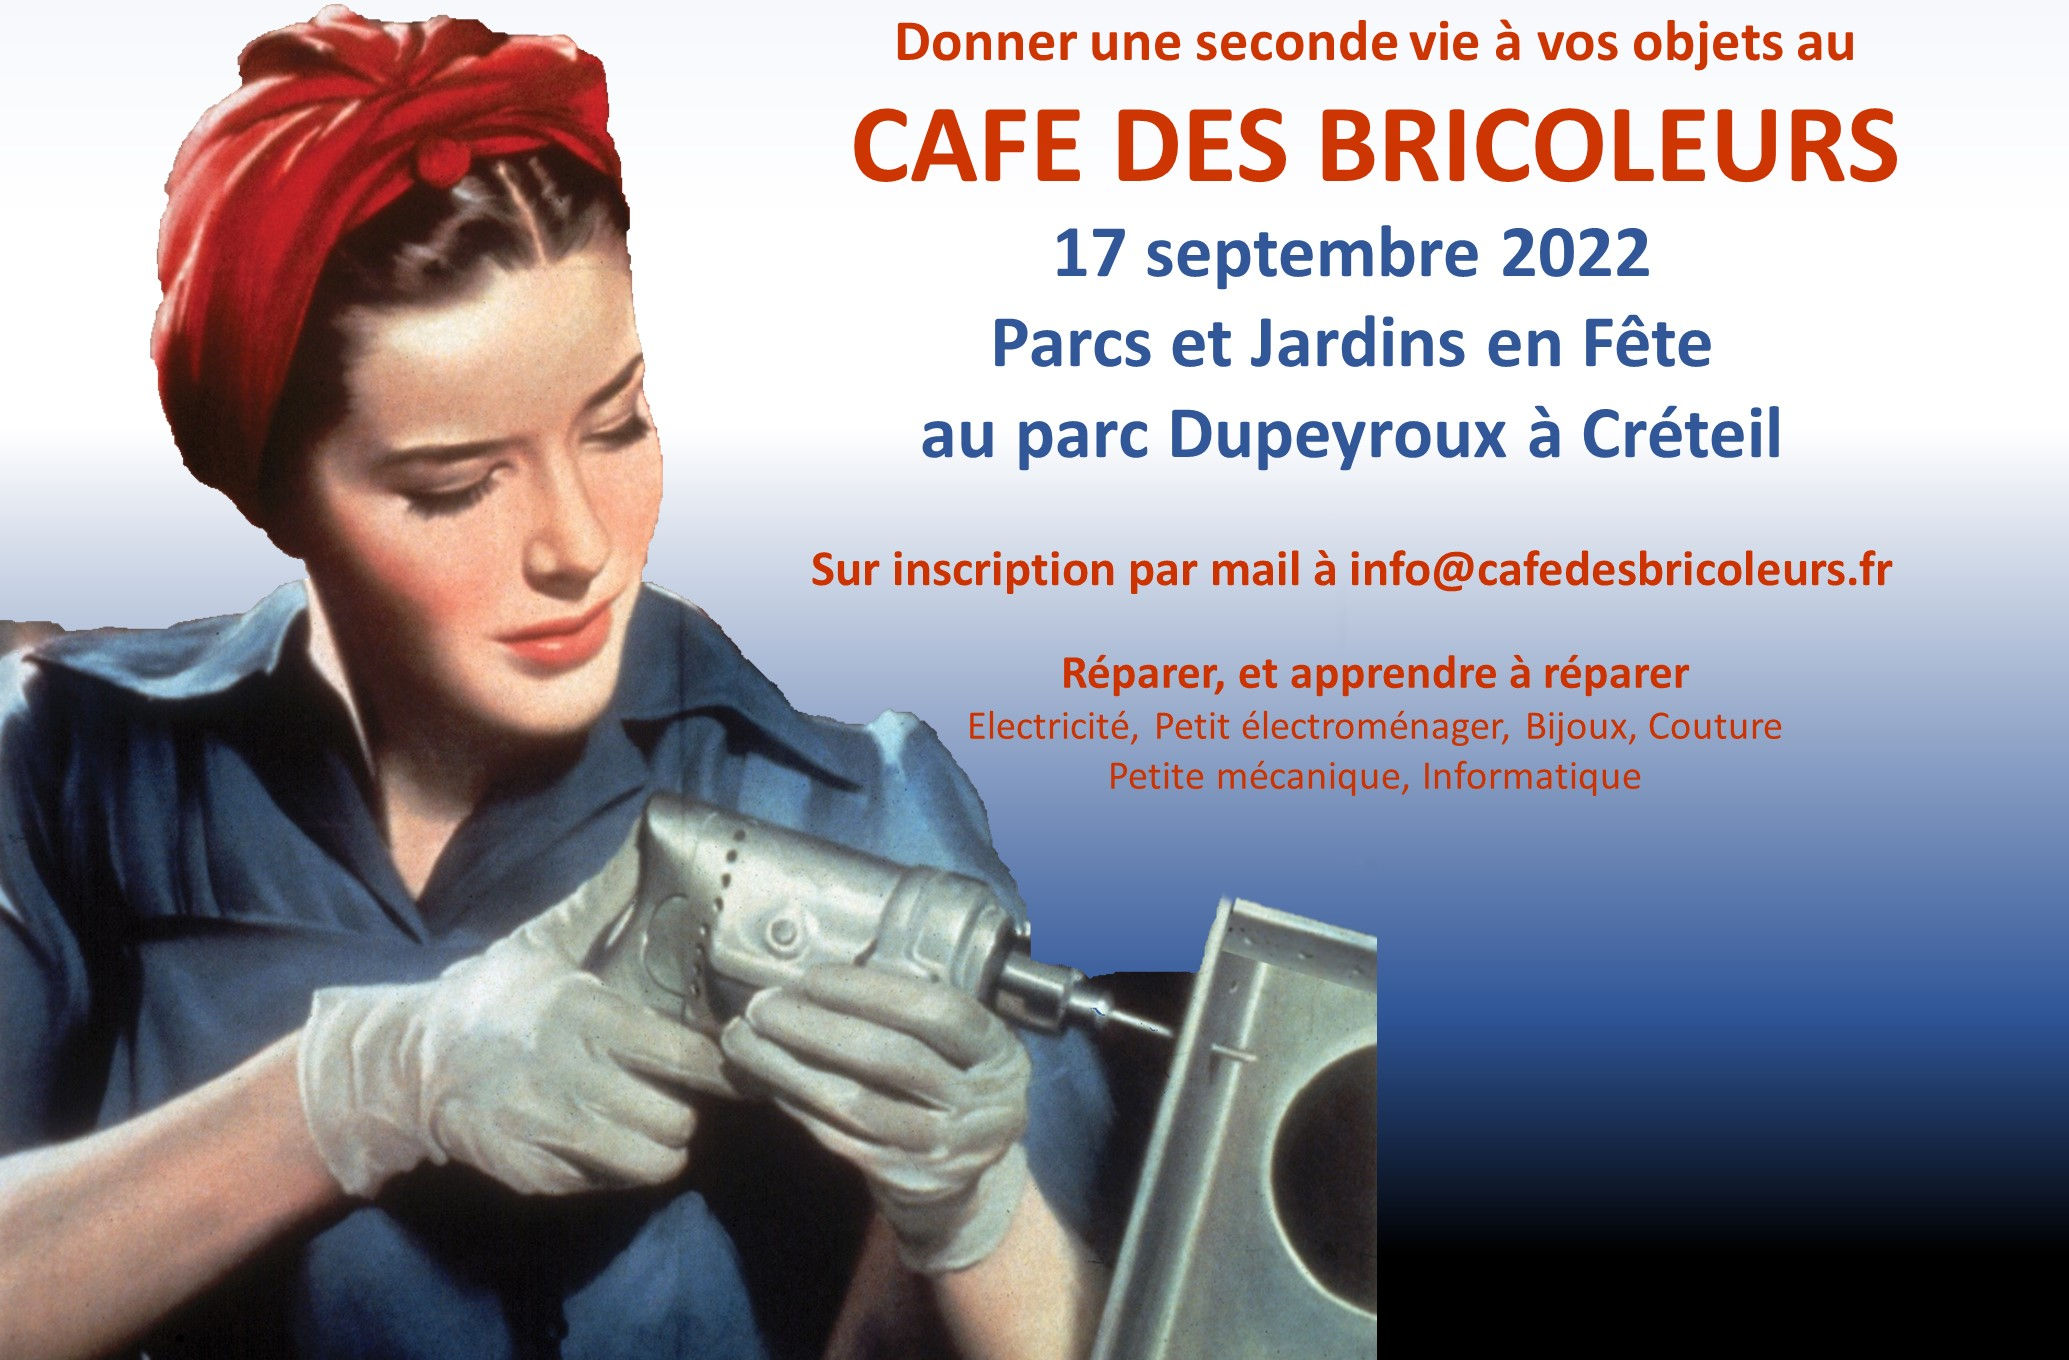 Atelier de réparation à Créteil le 17 septembre 2022